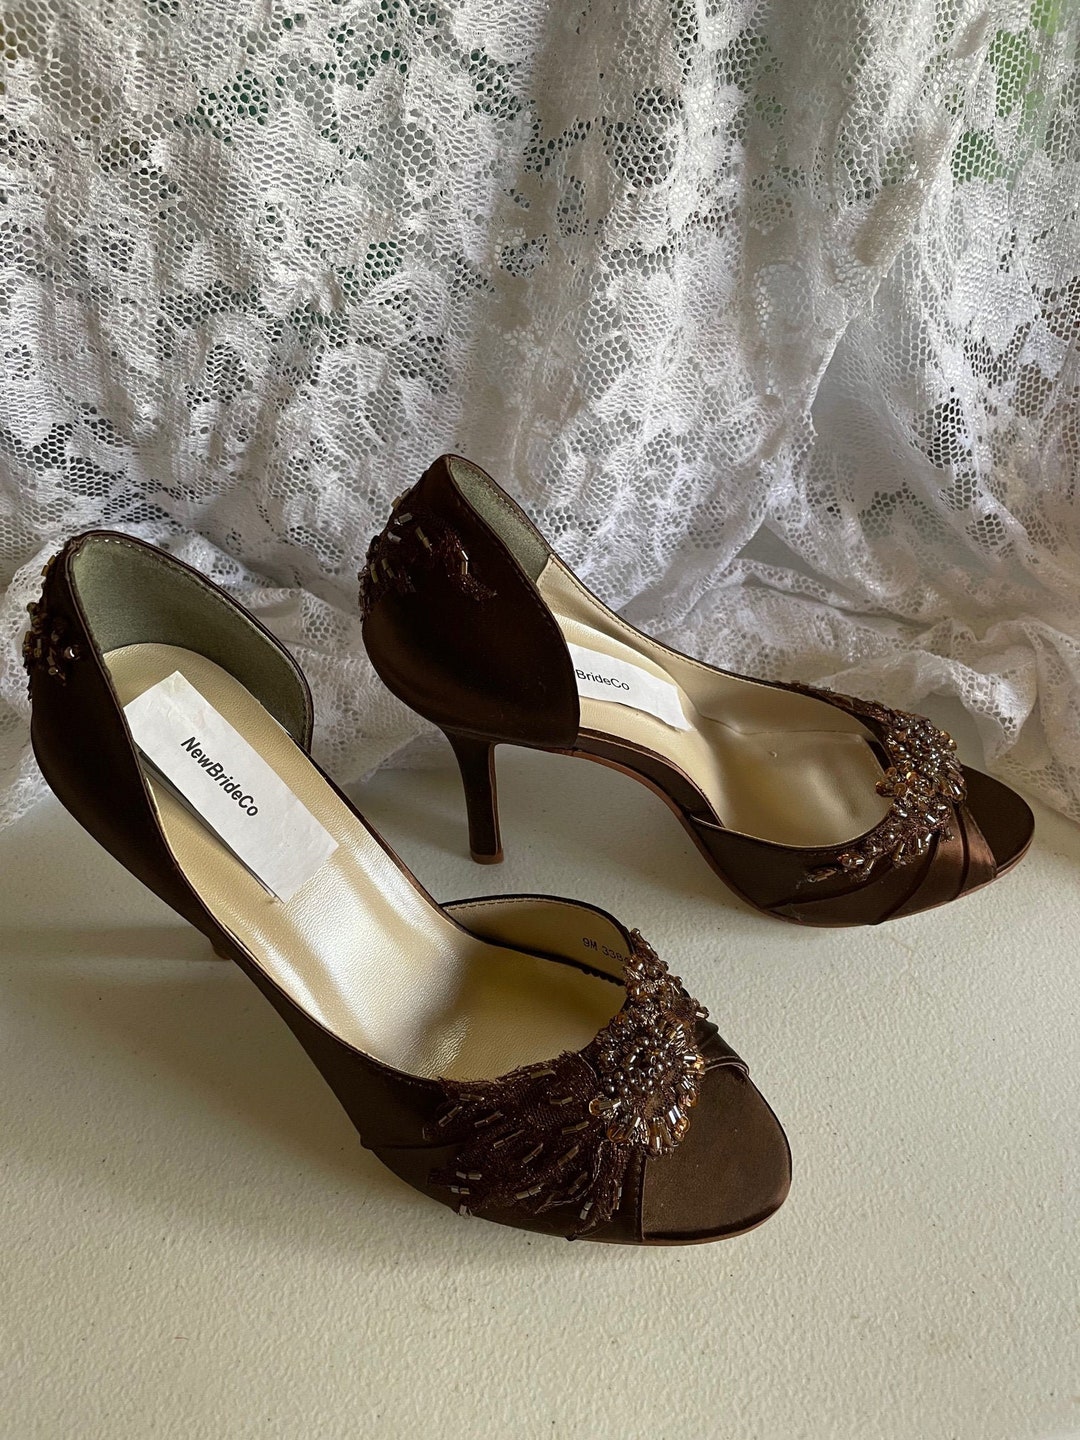 Wedding Shoes | Shop Bridal Shoes | Lace & Favour